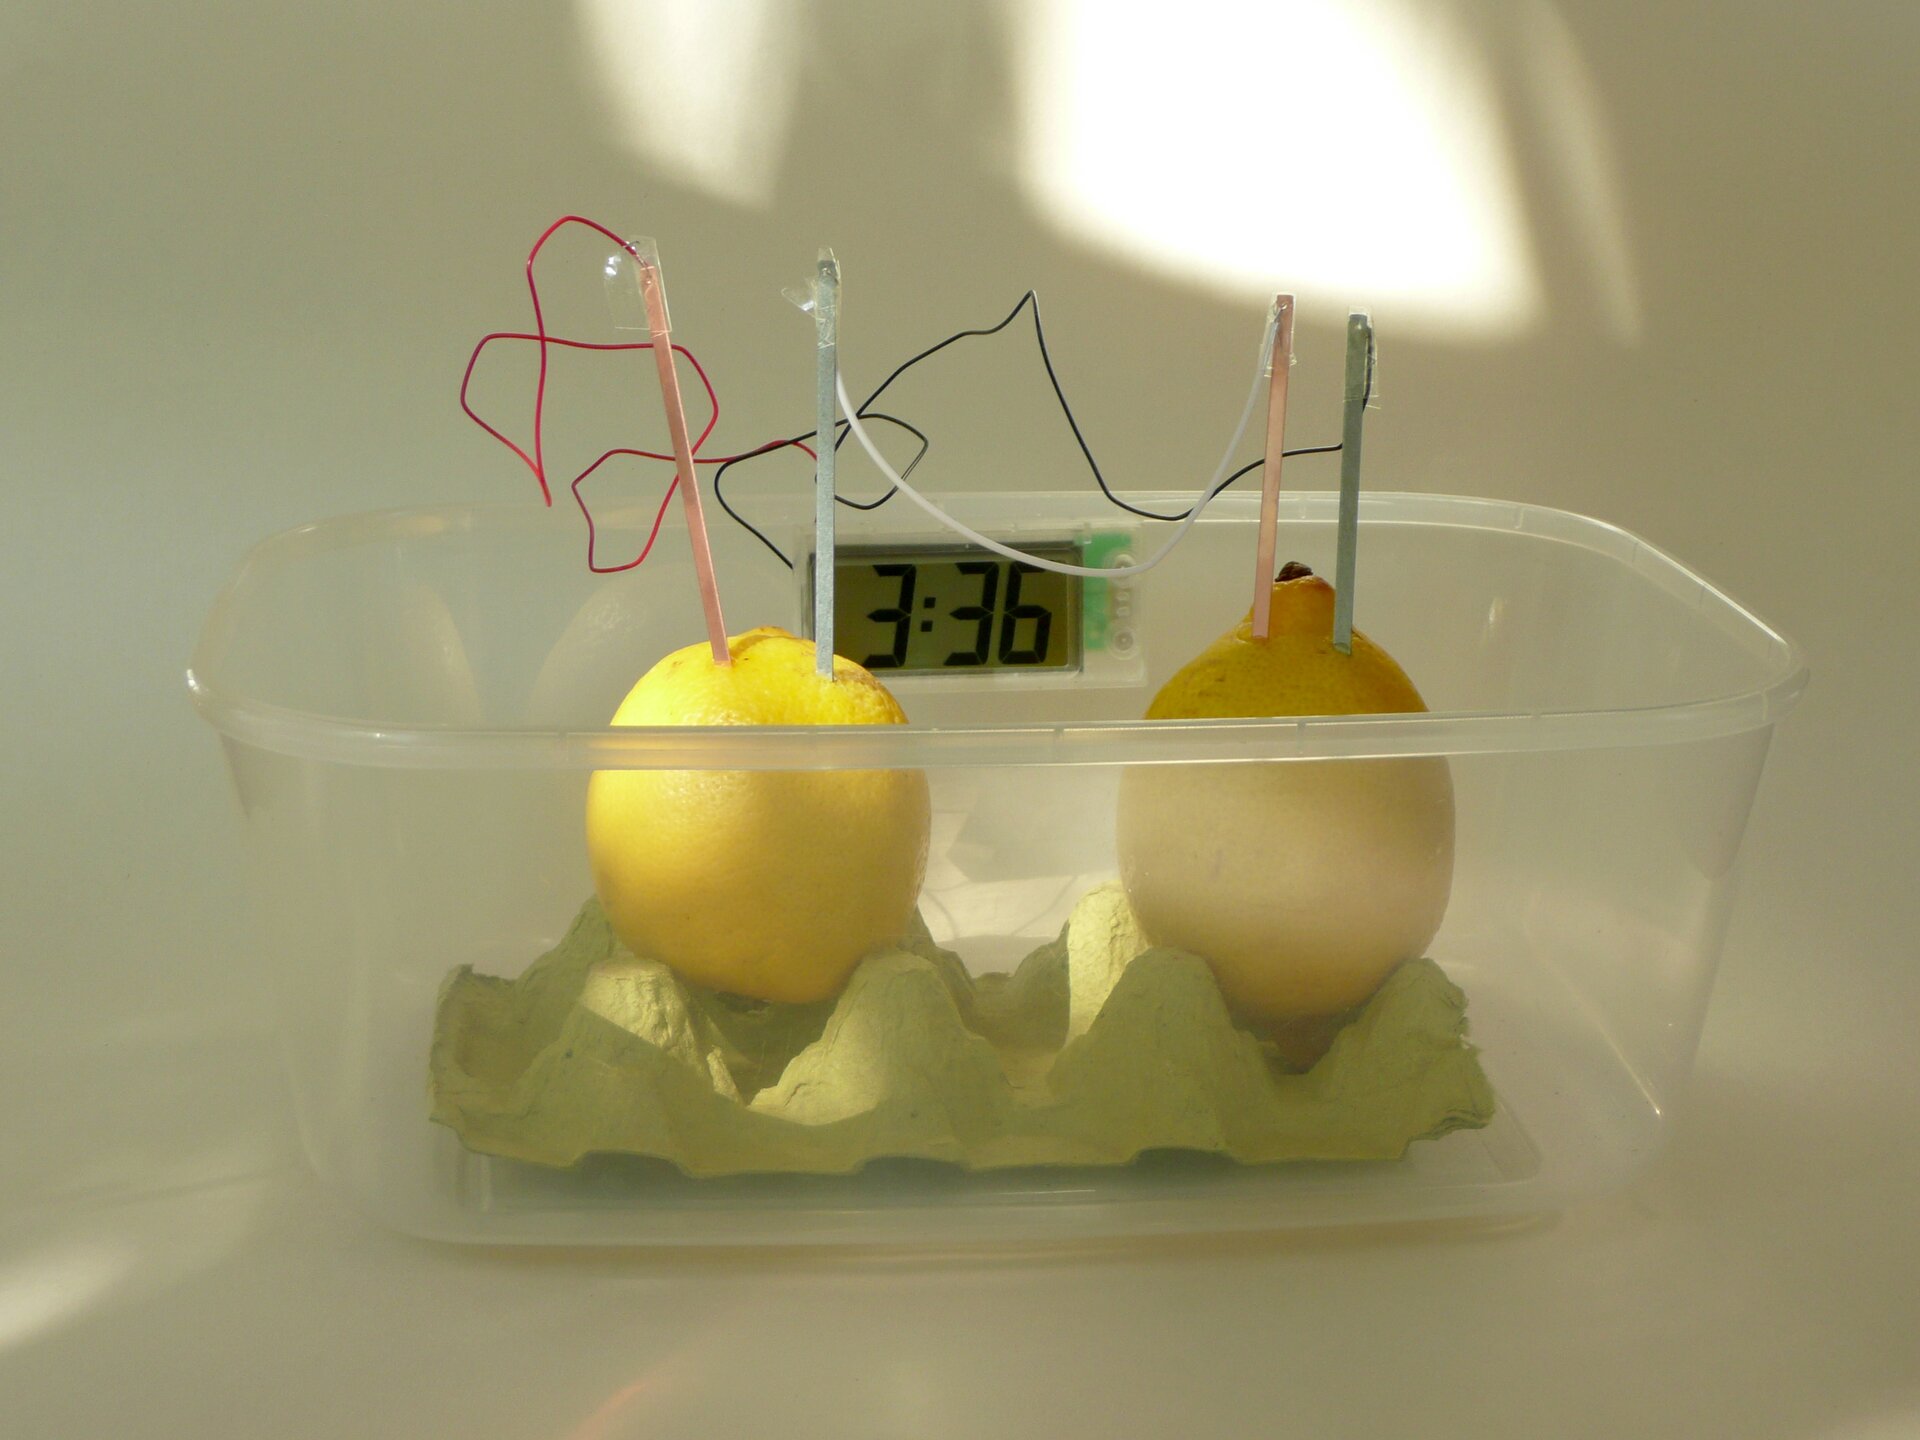 Fotografia przedstawia plastikowe przezroczyste pudełko, w którym stworzono baterię z cytryny. Na podkładce z papierowego opakowania po jajkach ustawiono dwie cytryny, w które wbito patyczki połączone ze sobą przewodem.